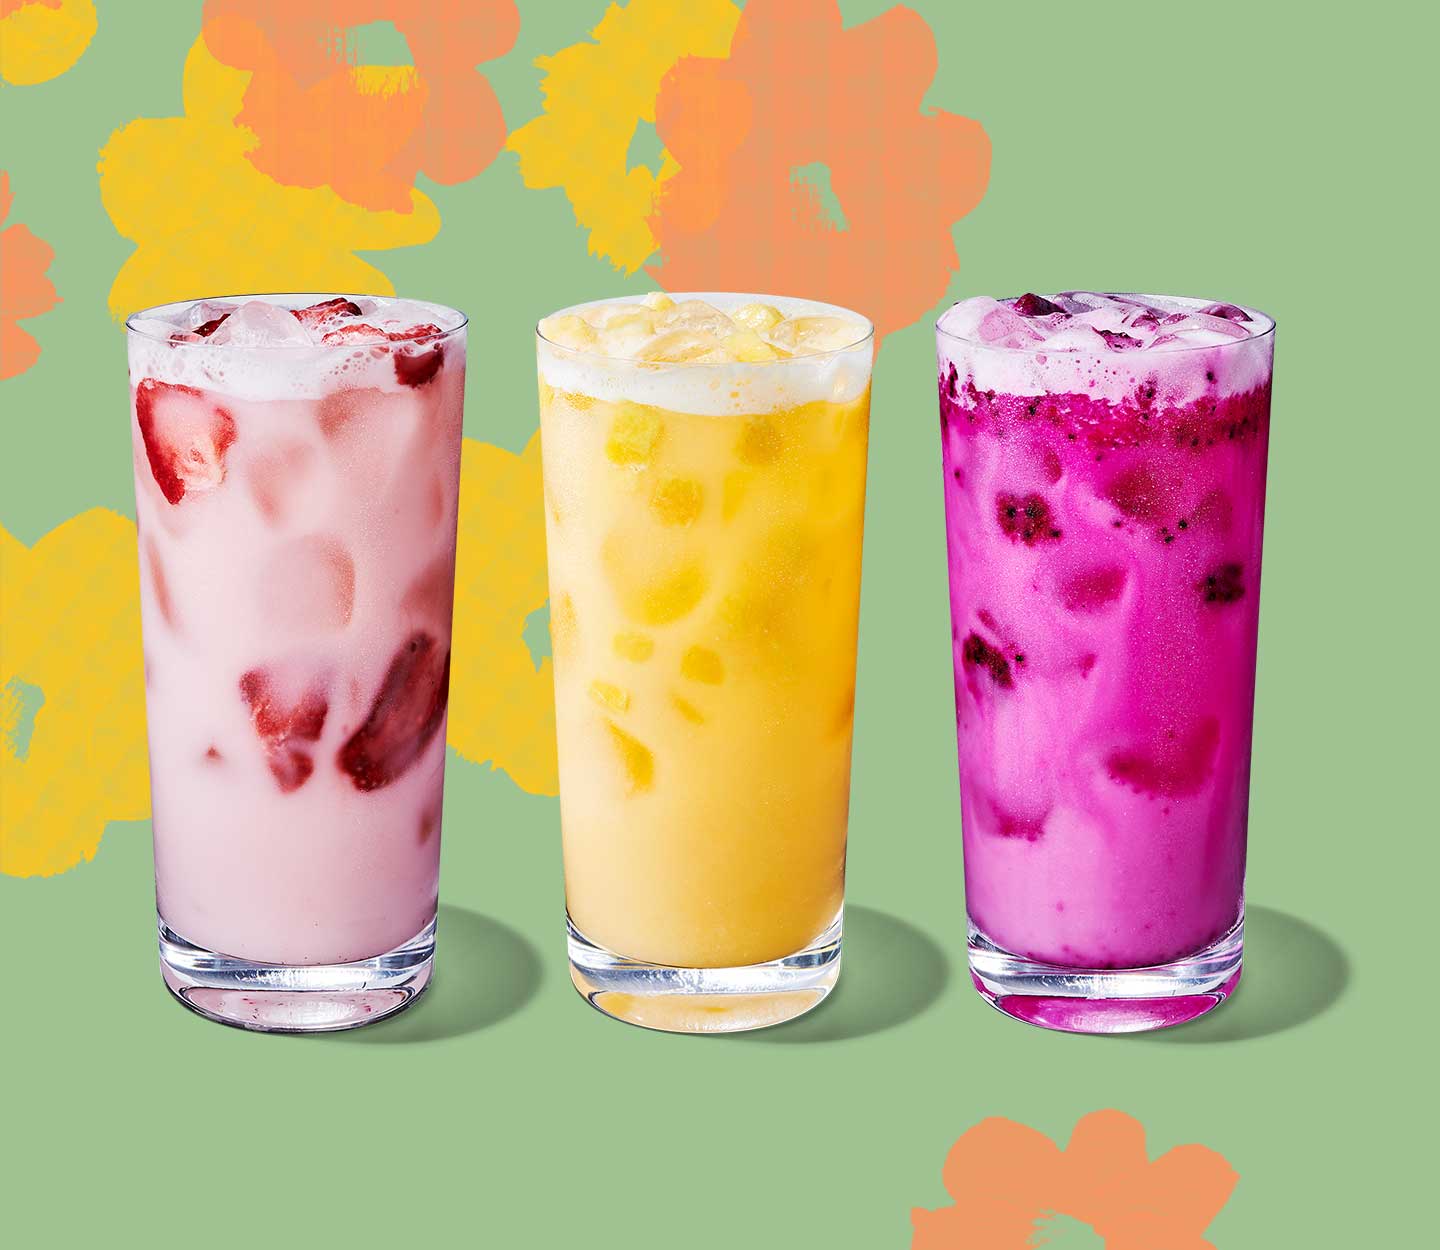 Des boissons glacées rose, jaune et magenta contenant des morceaux de fruits dans de grands verres.